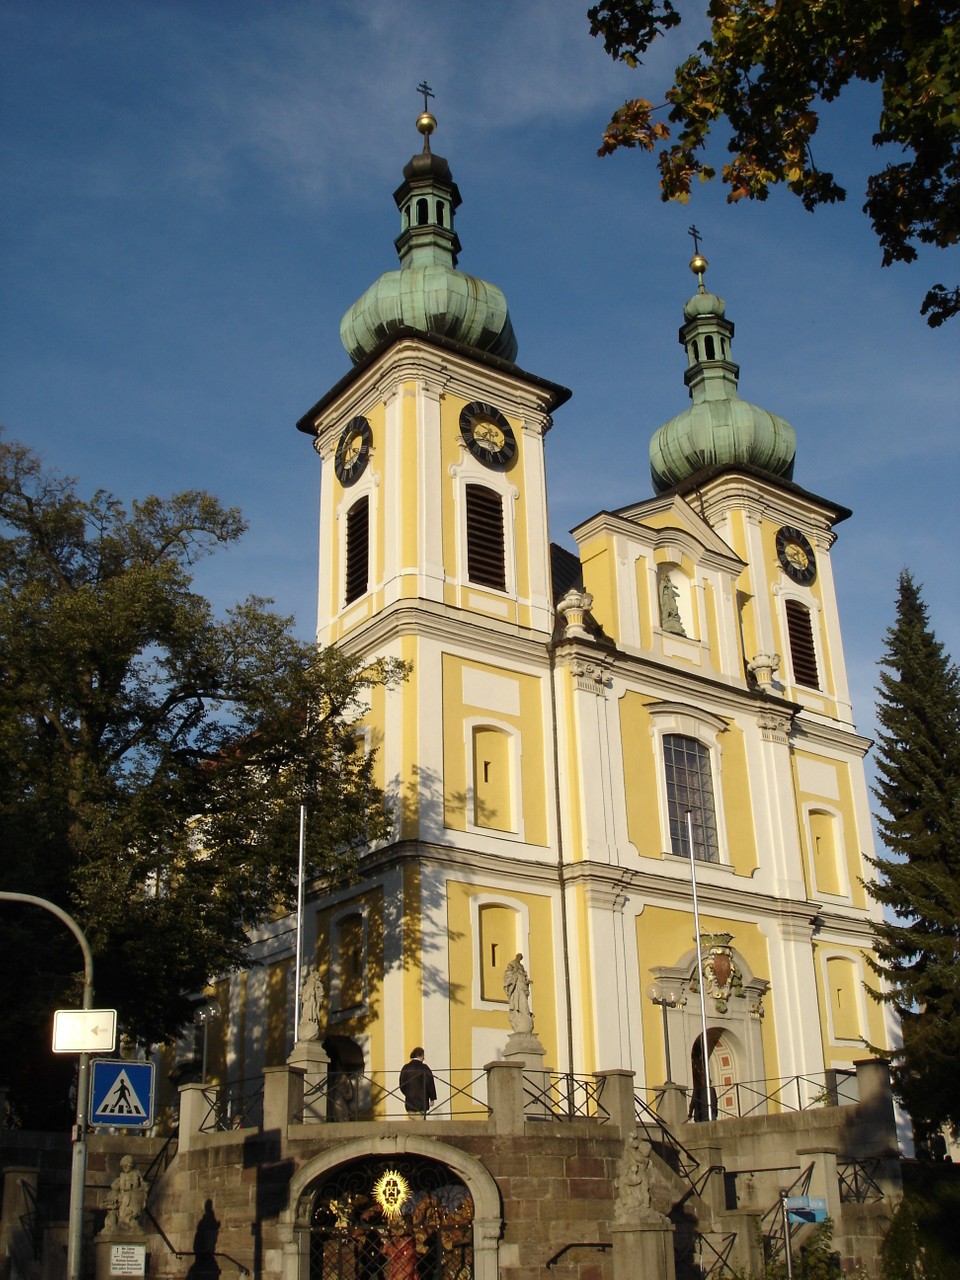 Donaueschingen - Church